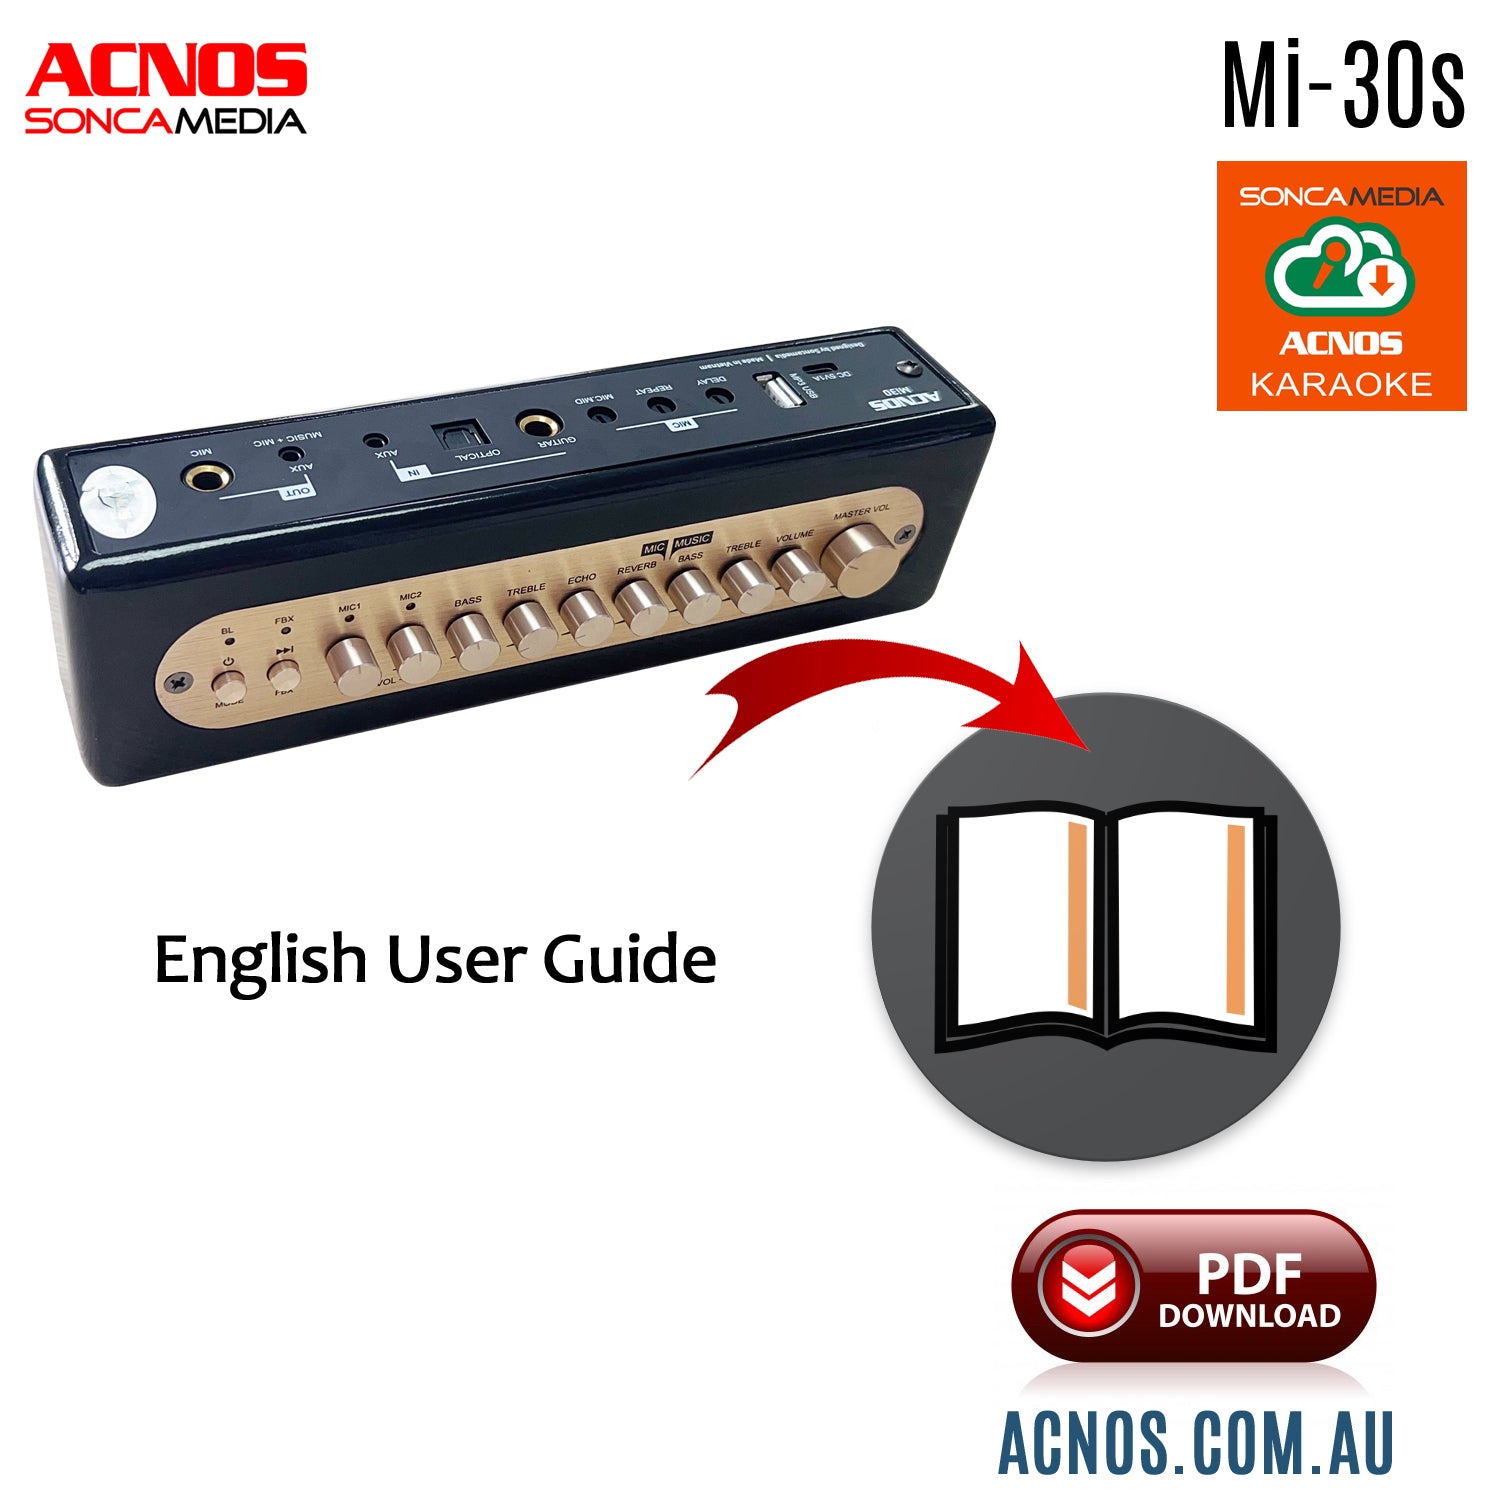 How To Connect Guide - ACNOS Mi-30s Compact Portable Karaoke Mixer